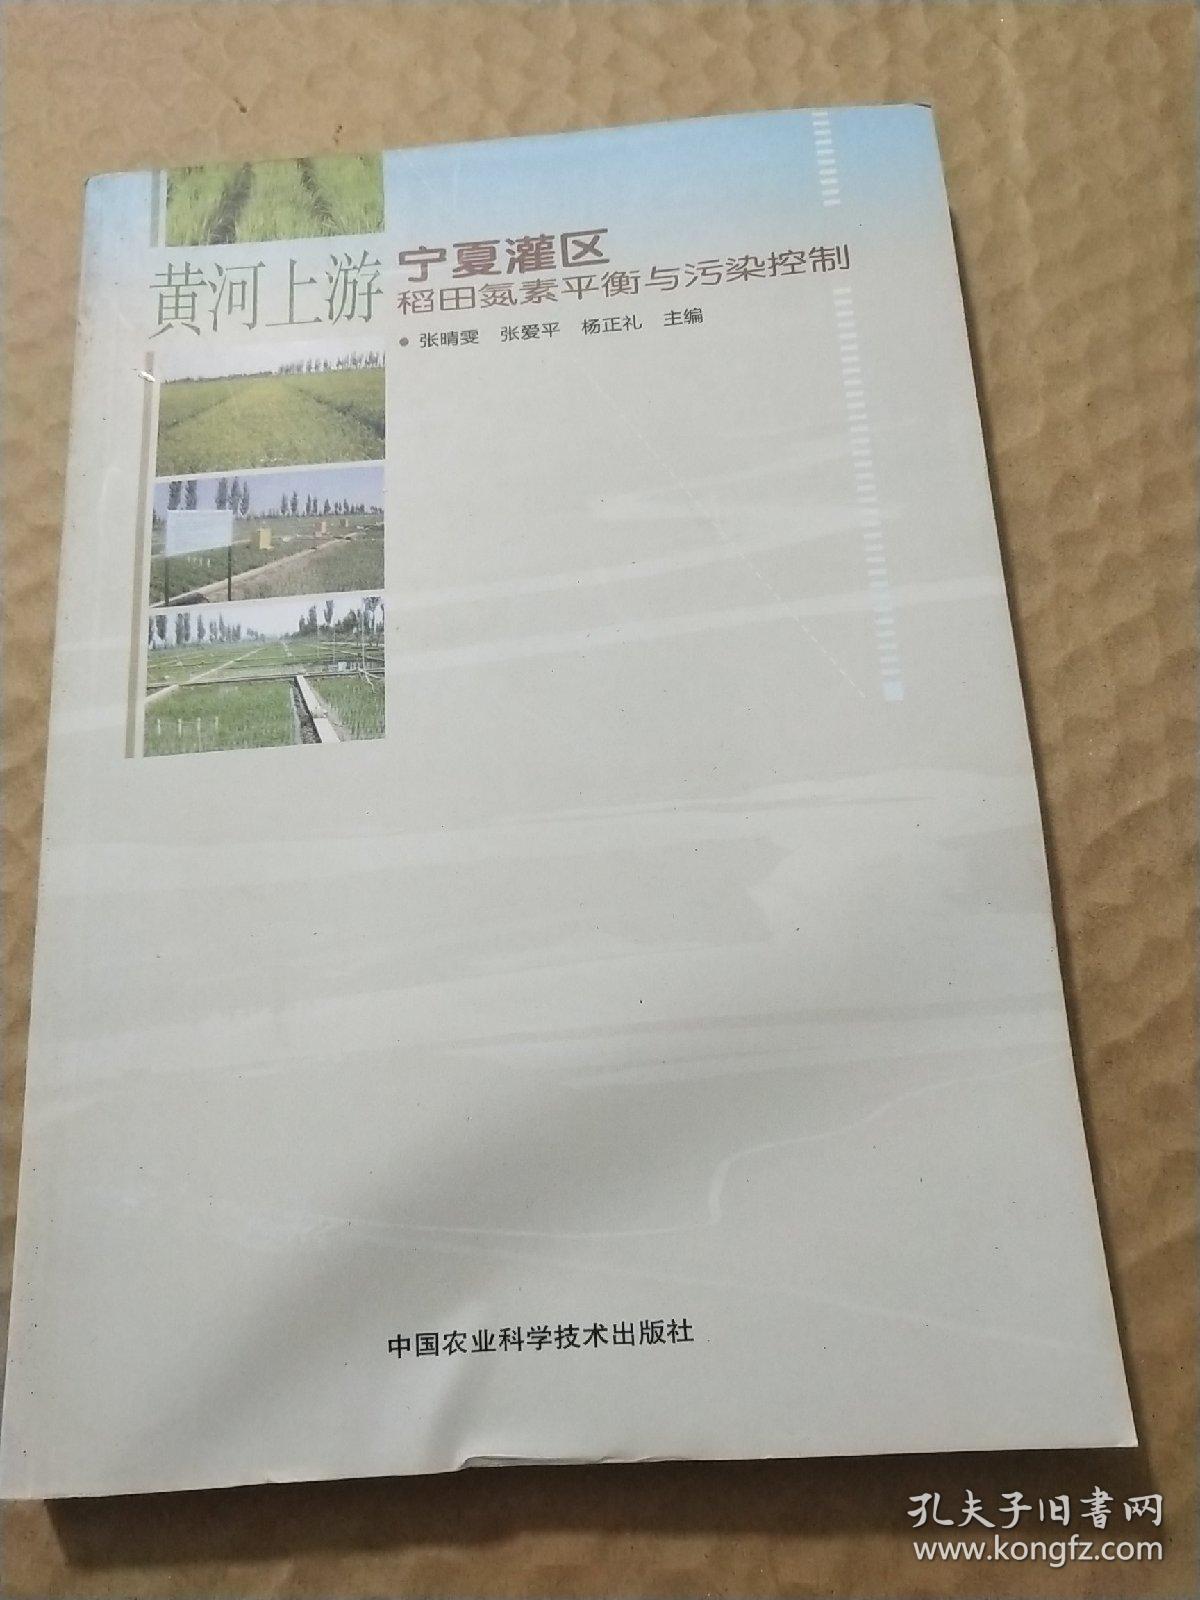 黄河上游宁夏灌区稻田氮素平衡与污染控制